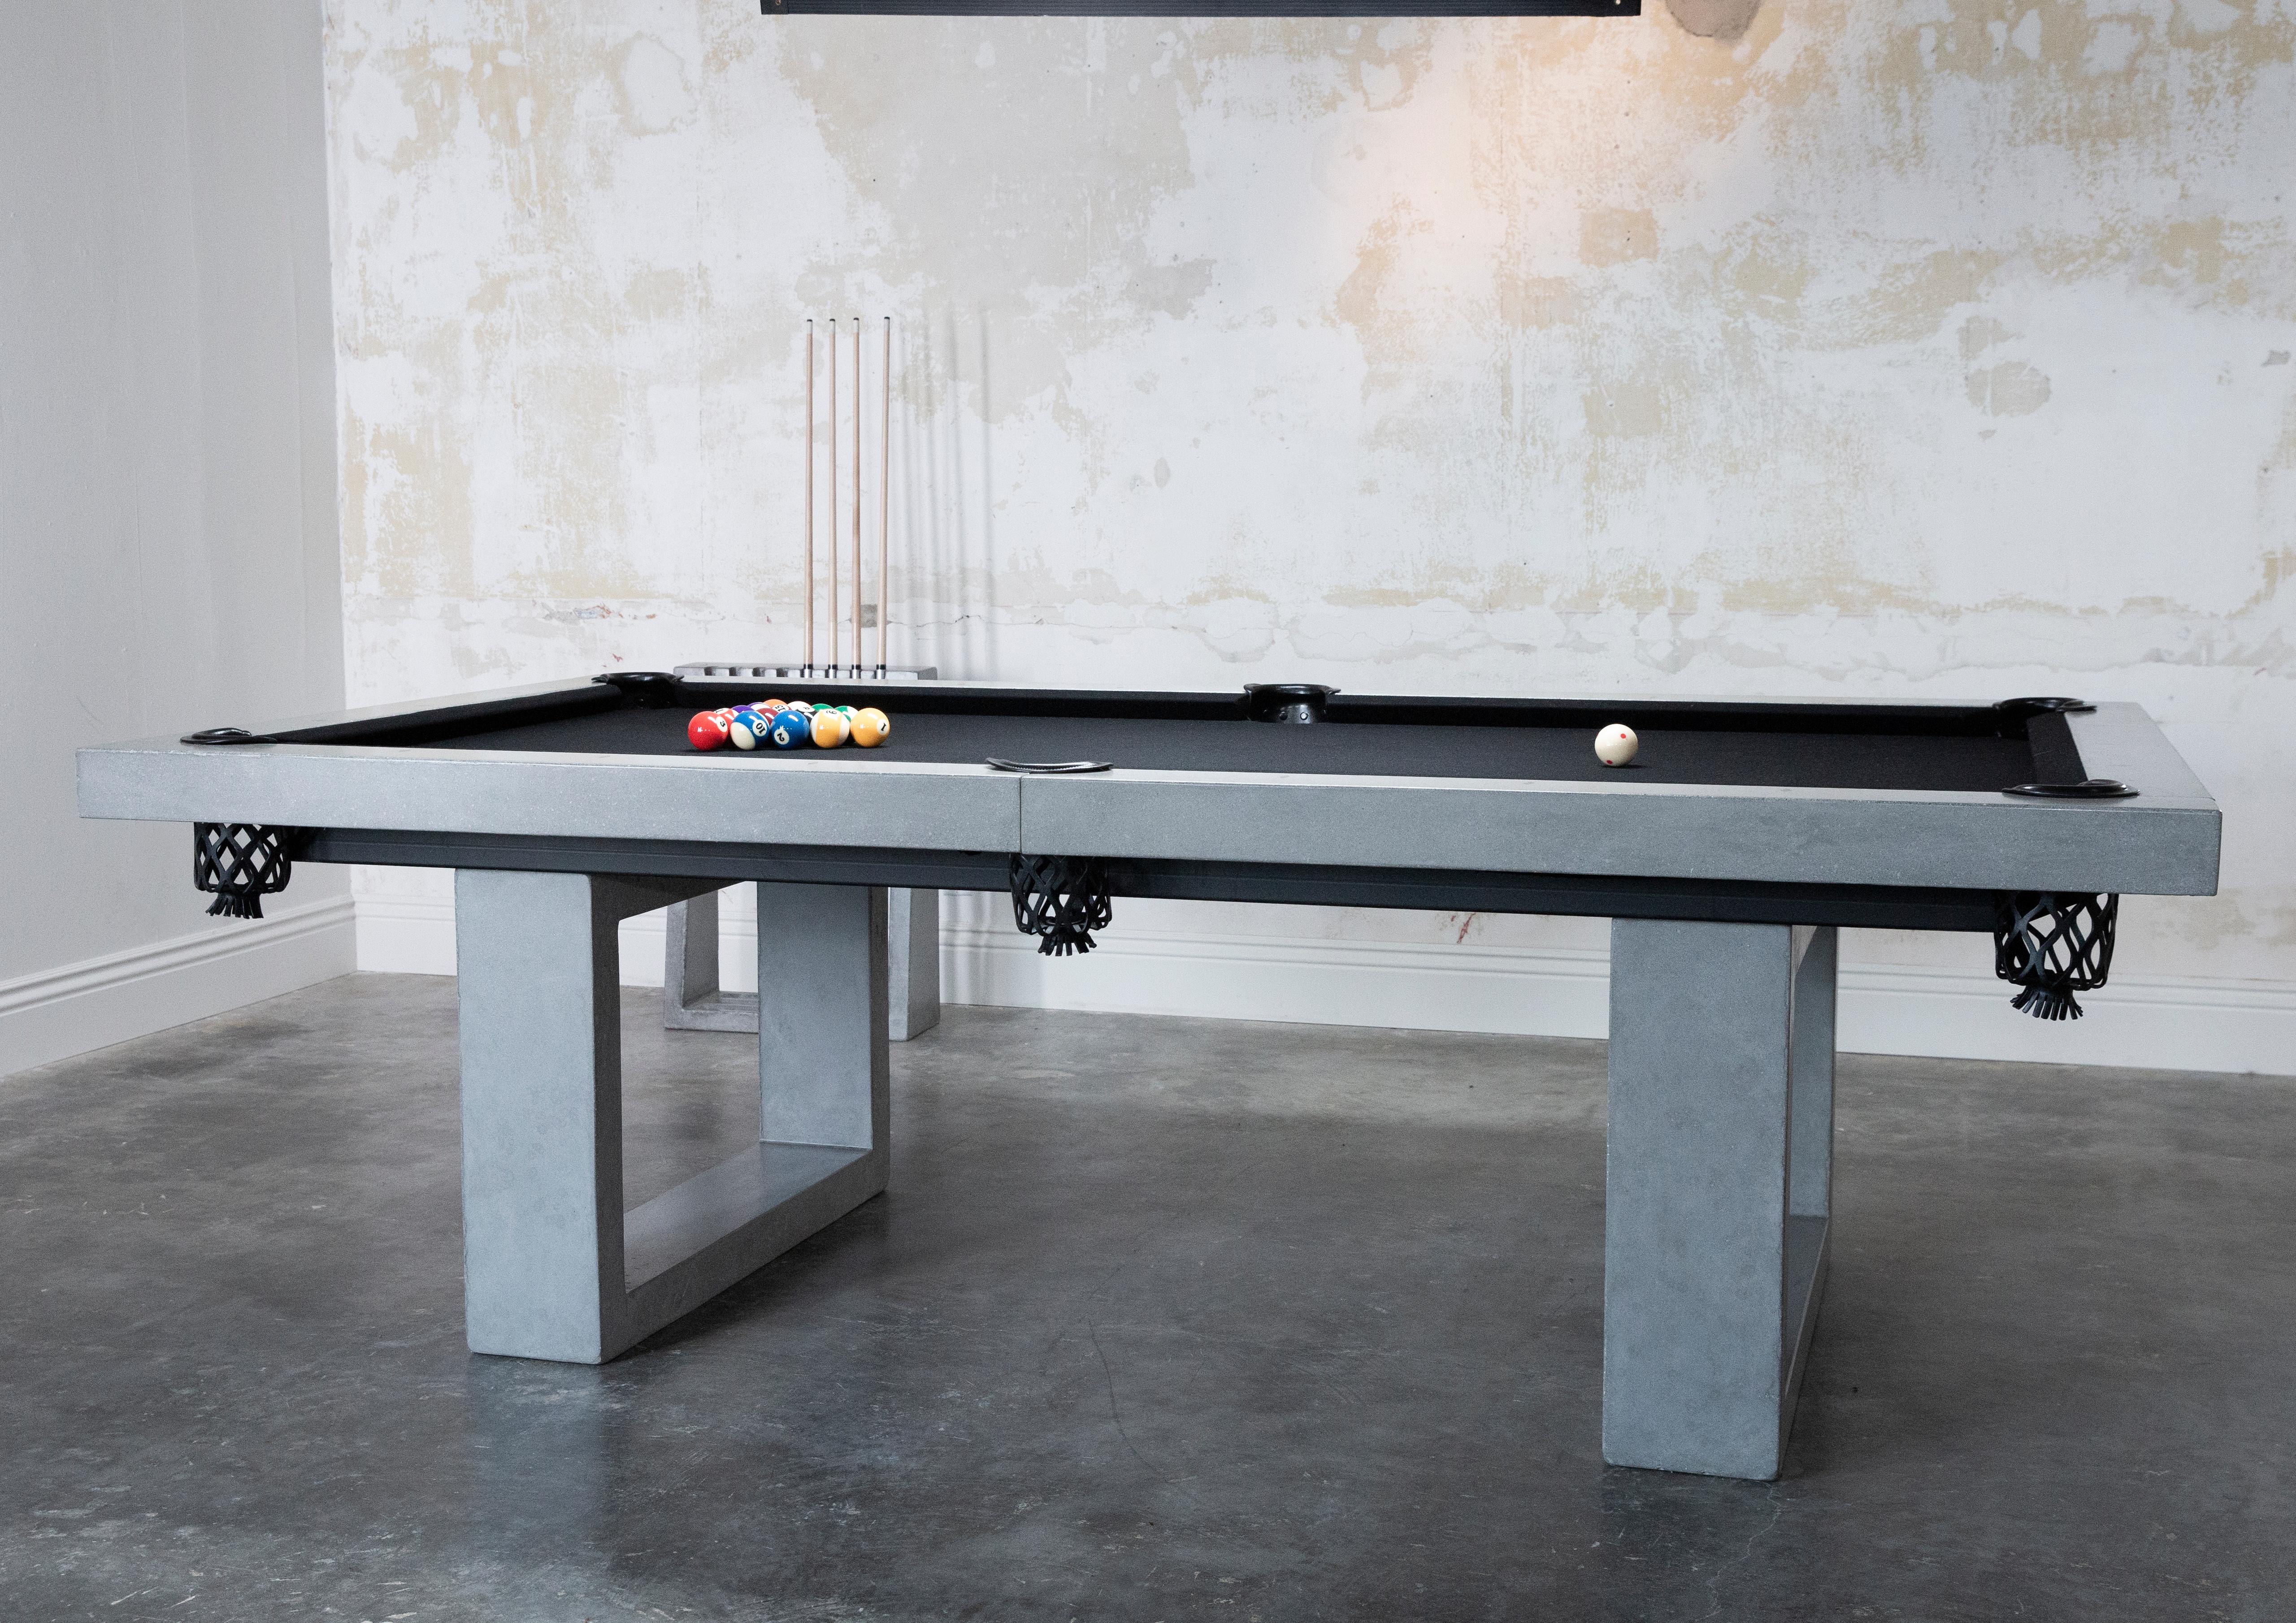 Der klassische James de Wulf Billardtisch aus Beton ist ein unverzichtbares Element in jedem Spielzimmer. Der Tisch in Regelgröße besteht aus mit Kohlefaser verstärktem Beton. Er verfügt über eine glatte, hochleistungsfähige Oberfläche, die mit